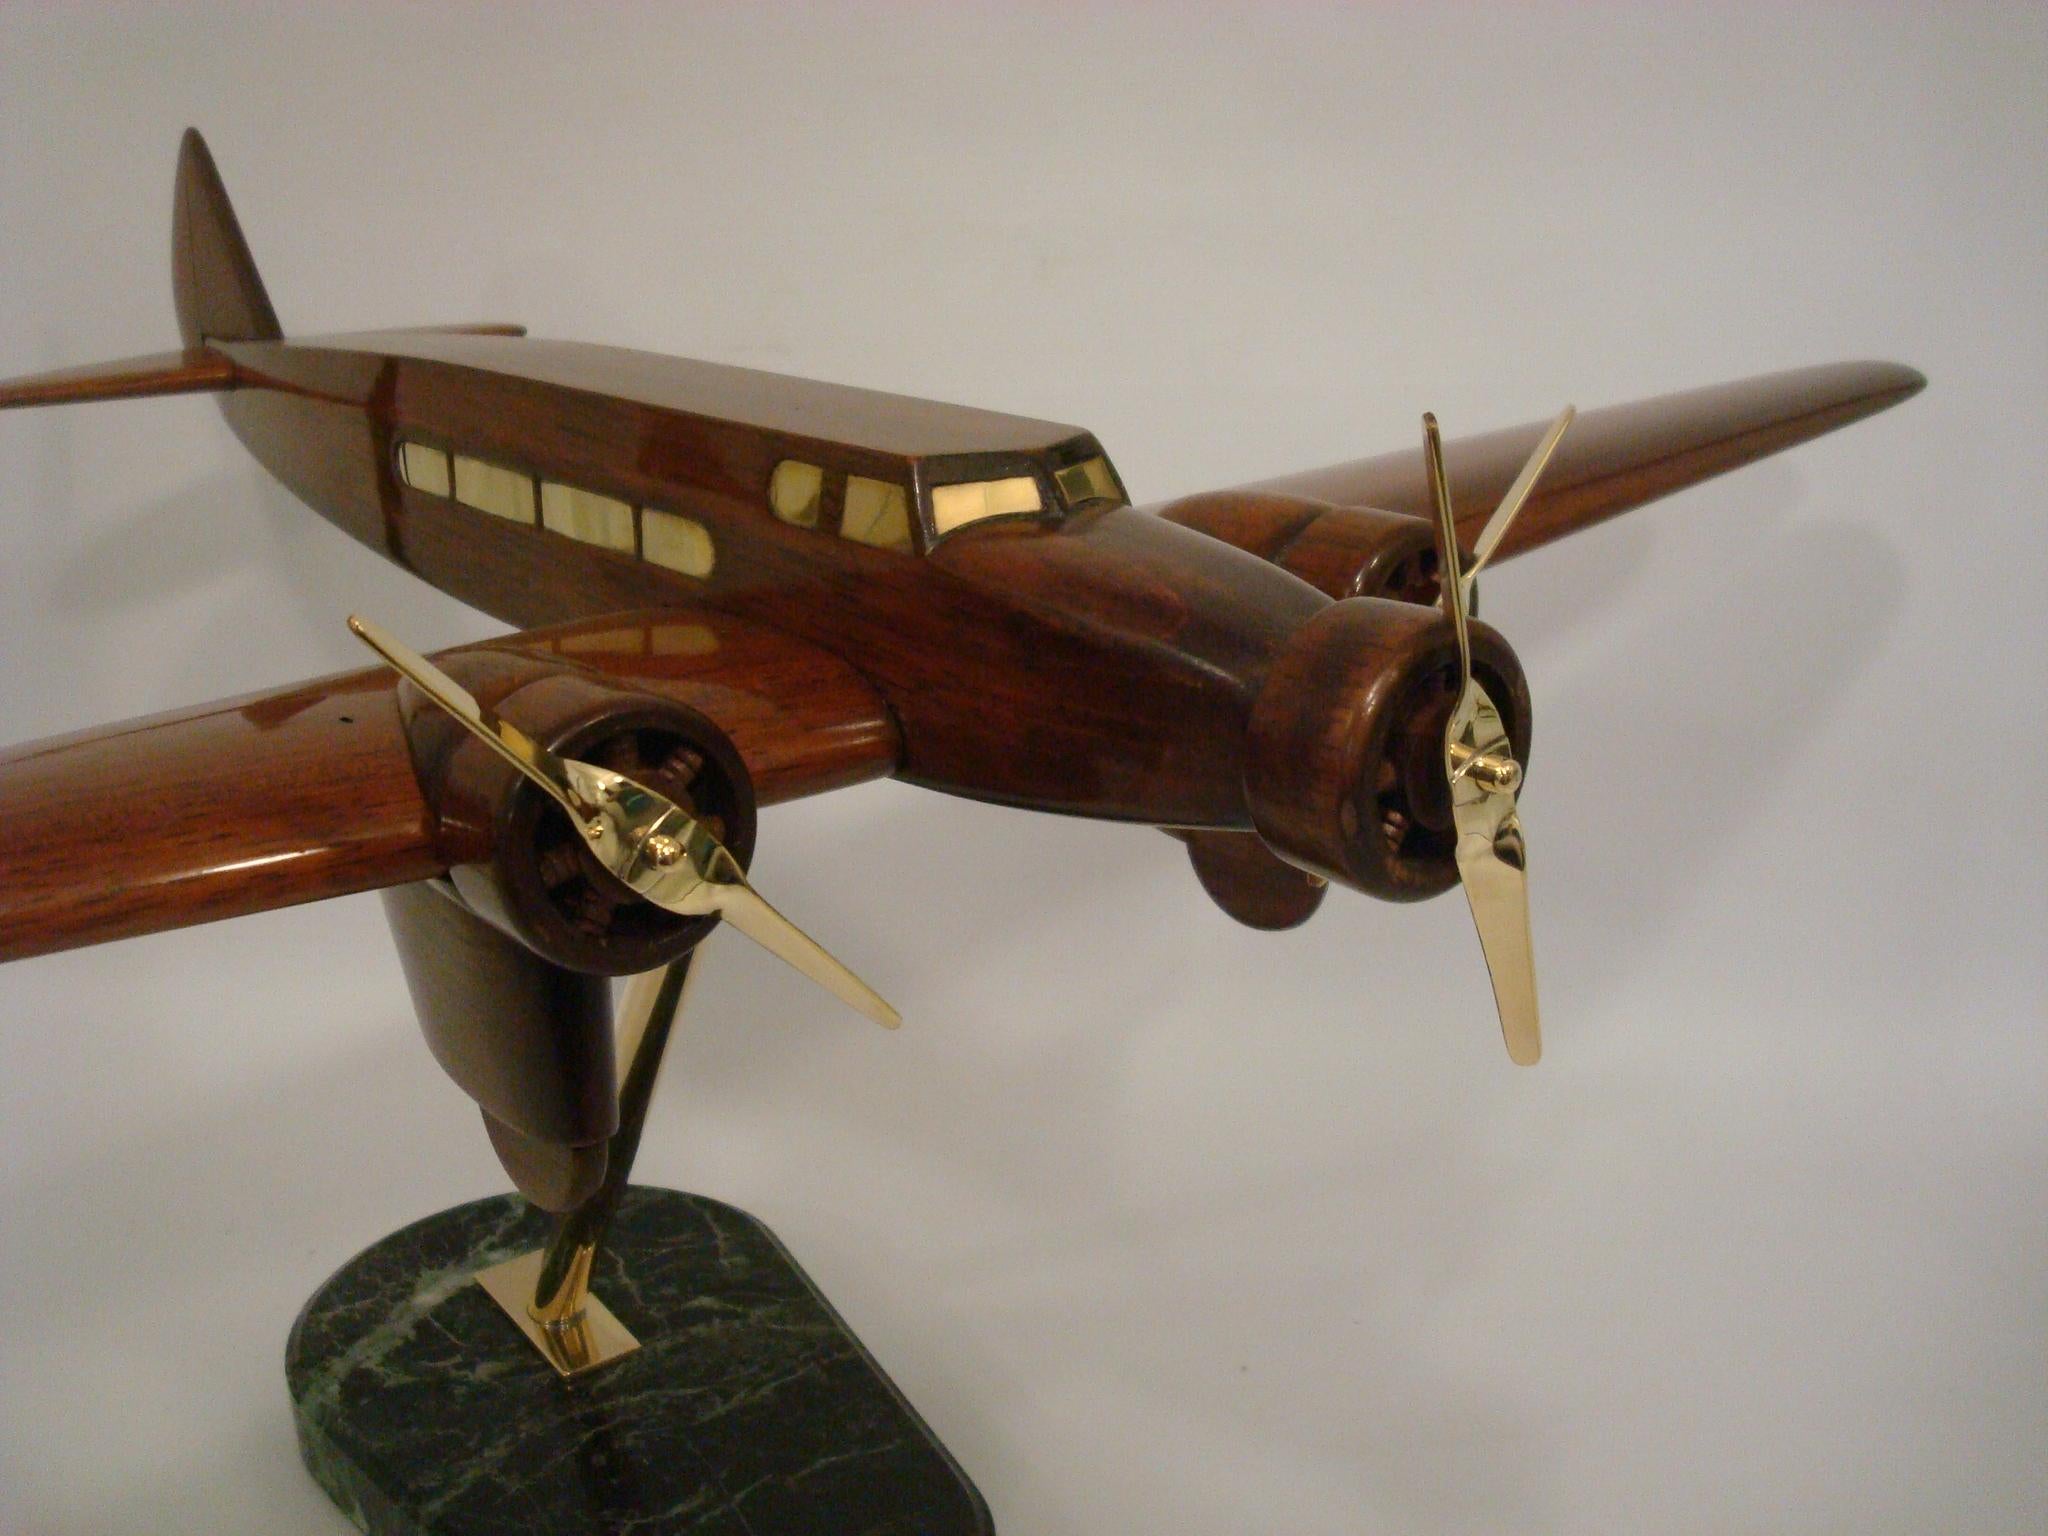 Art Deco Dewoitine Wooden Counters Desk Model Airplane 1930s French.
La Dewoitine  était un avion de ligne français à huit places de style Art déco des années 1930, construit par Dewoitine.
L'avion était un monoplan à aile basse en porte-à-faux